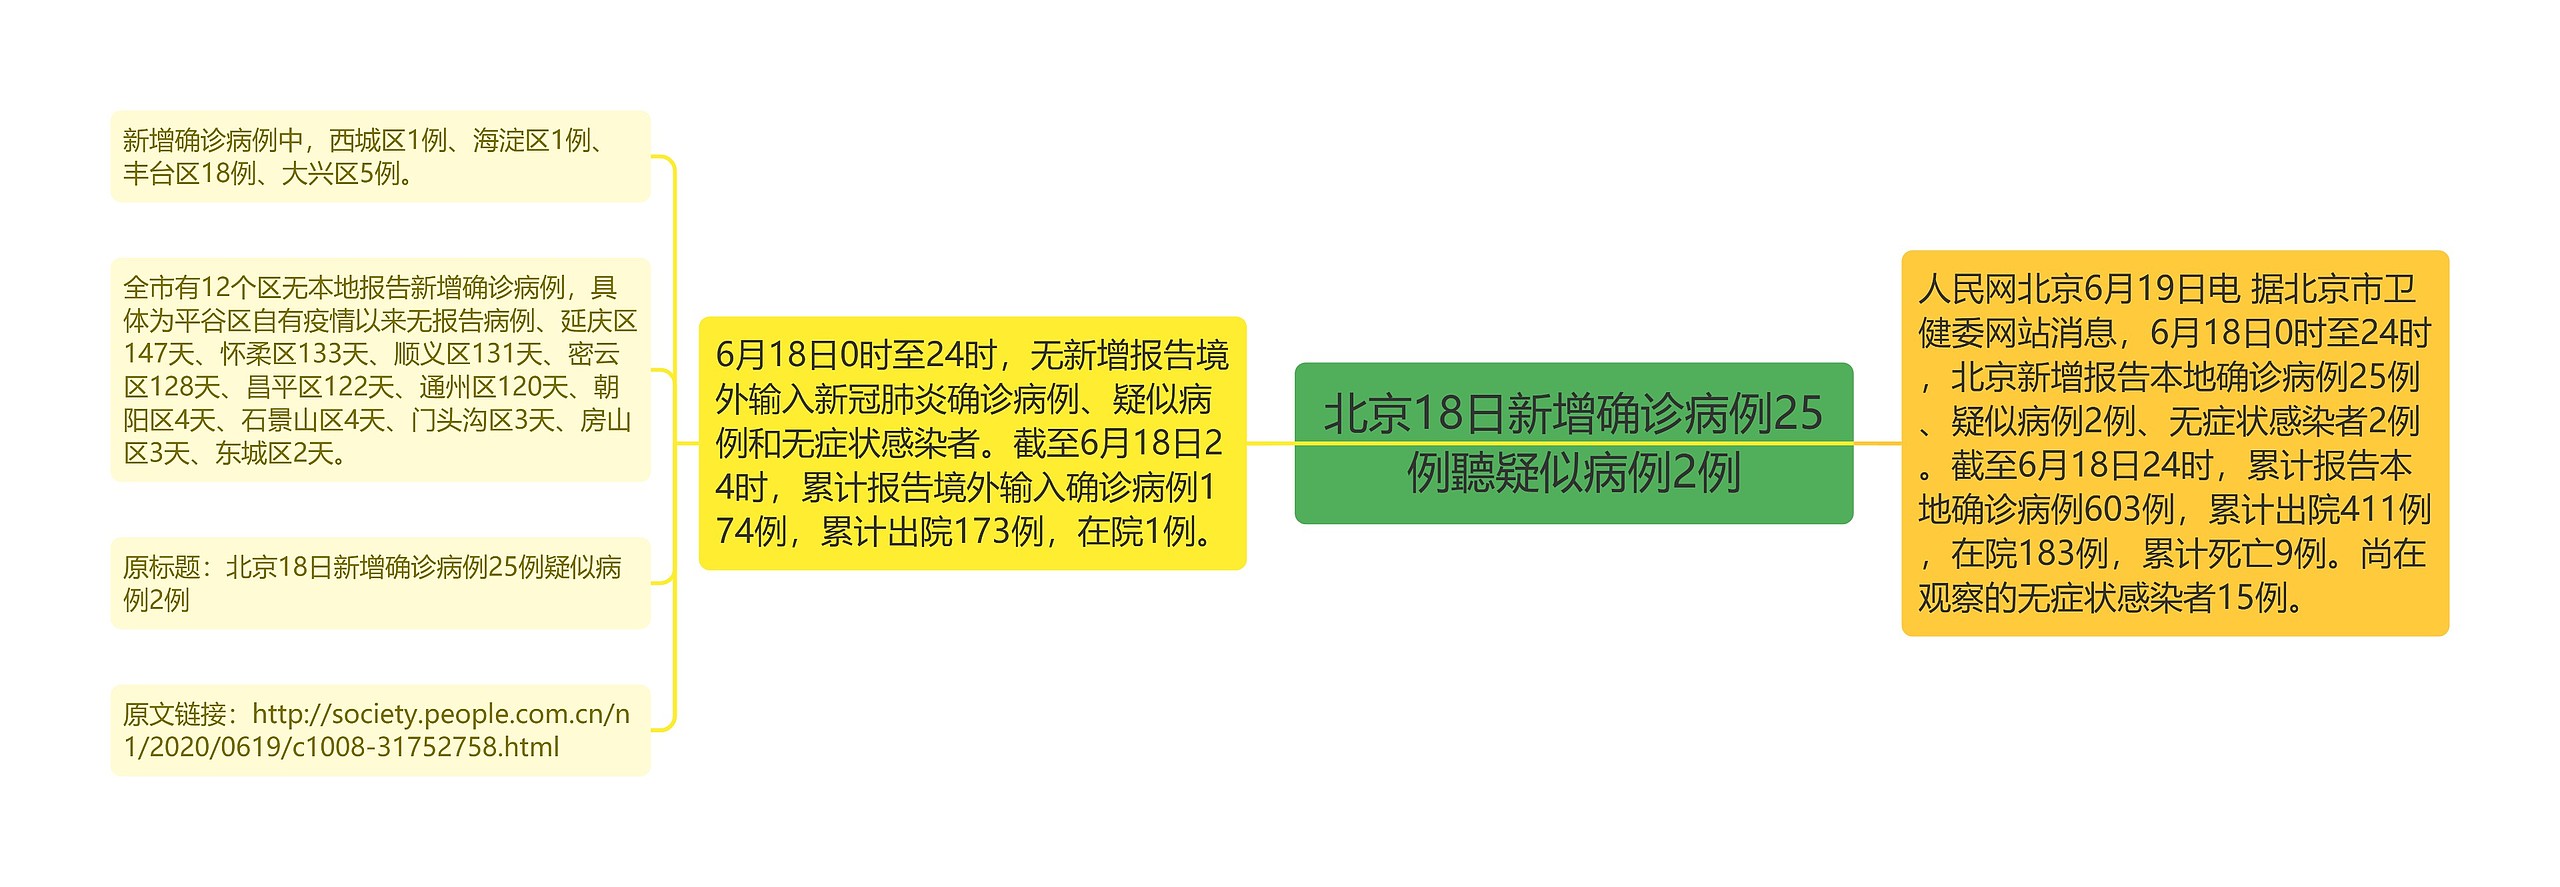 北京18日新增确诊病例25例聽疑似病例2例思维导图